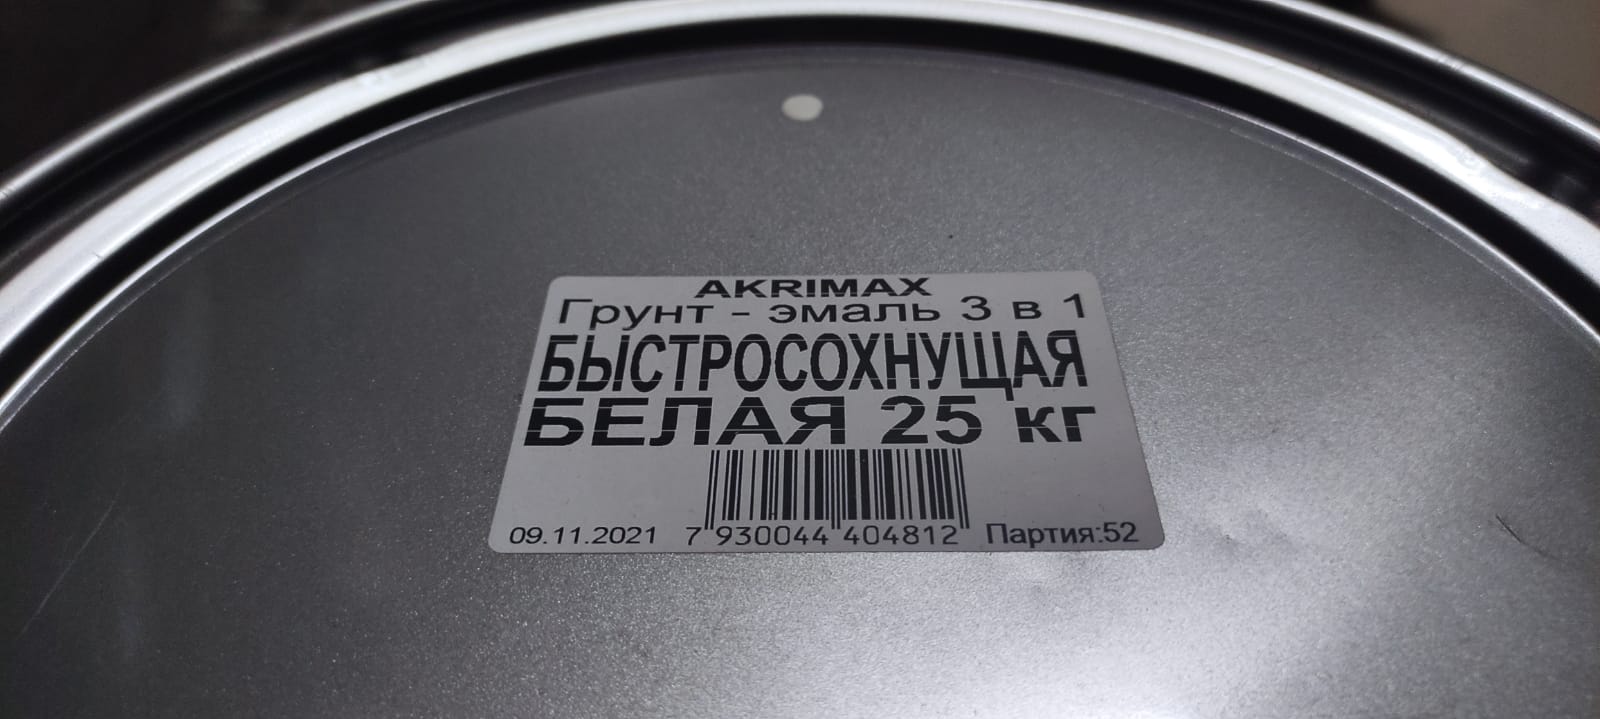 Грунт - эмаль по ржавчине 3 в1 быстросохнущая матовая Akrimax 25 кг (белая)								